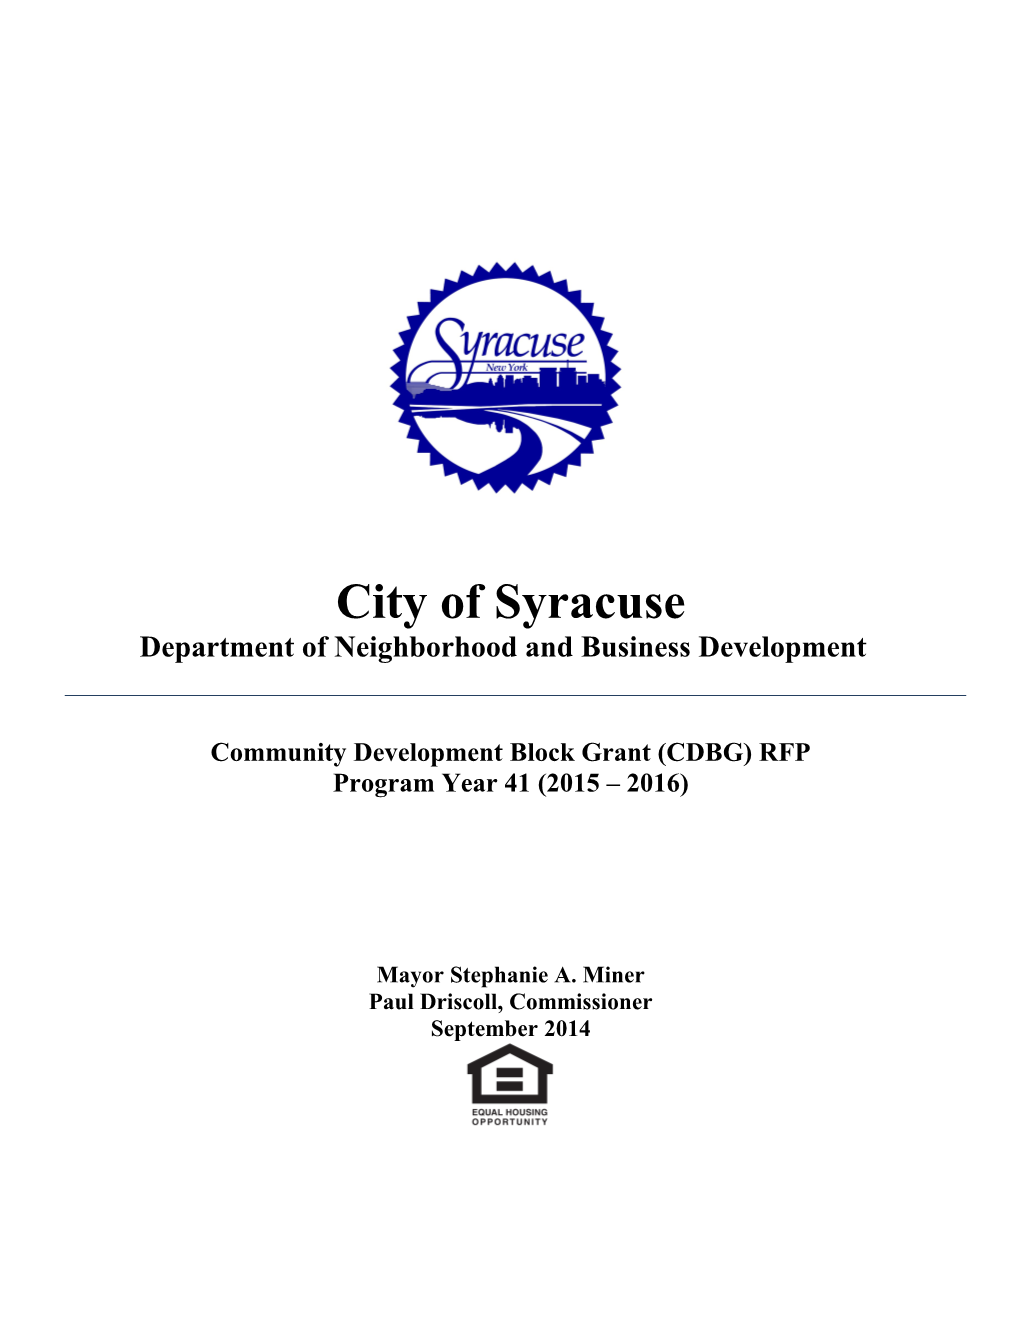 City of Syracuse 2014 2015 CDBG Funding RFP